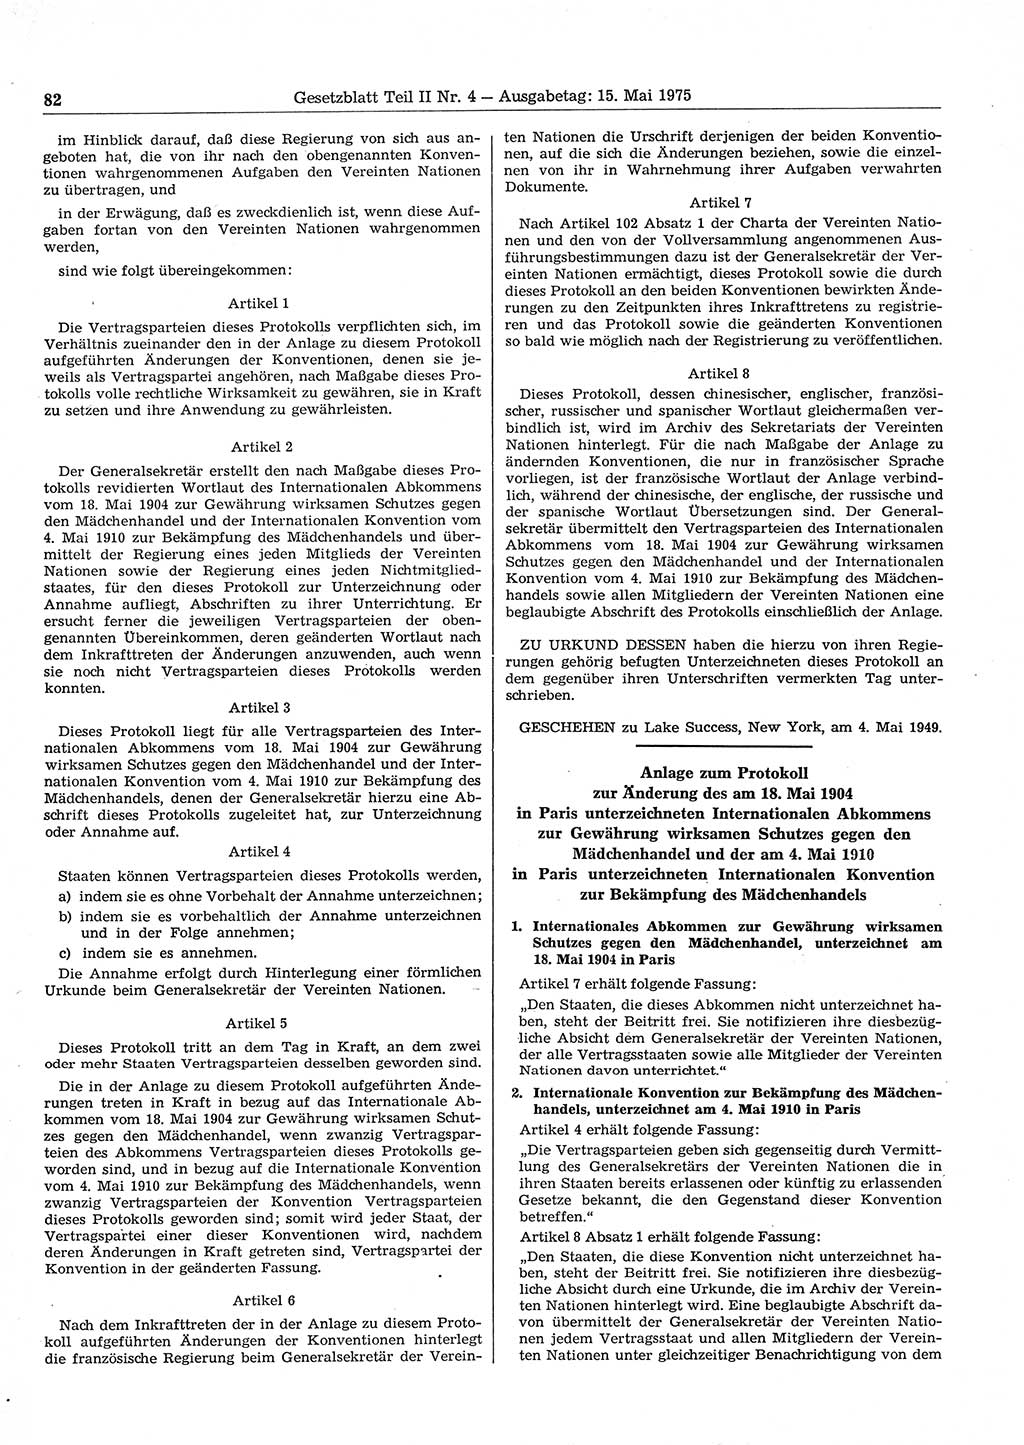 Gesetzblatt (GBl.) der Deutschen Demokratischen Republik (DDR) Teil ⅠⅠ 1975, Seite 82 (GBl. DDR ⅠⅠ 1975, S. 82)